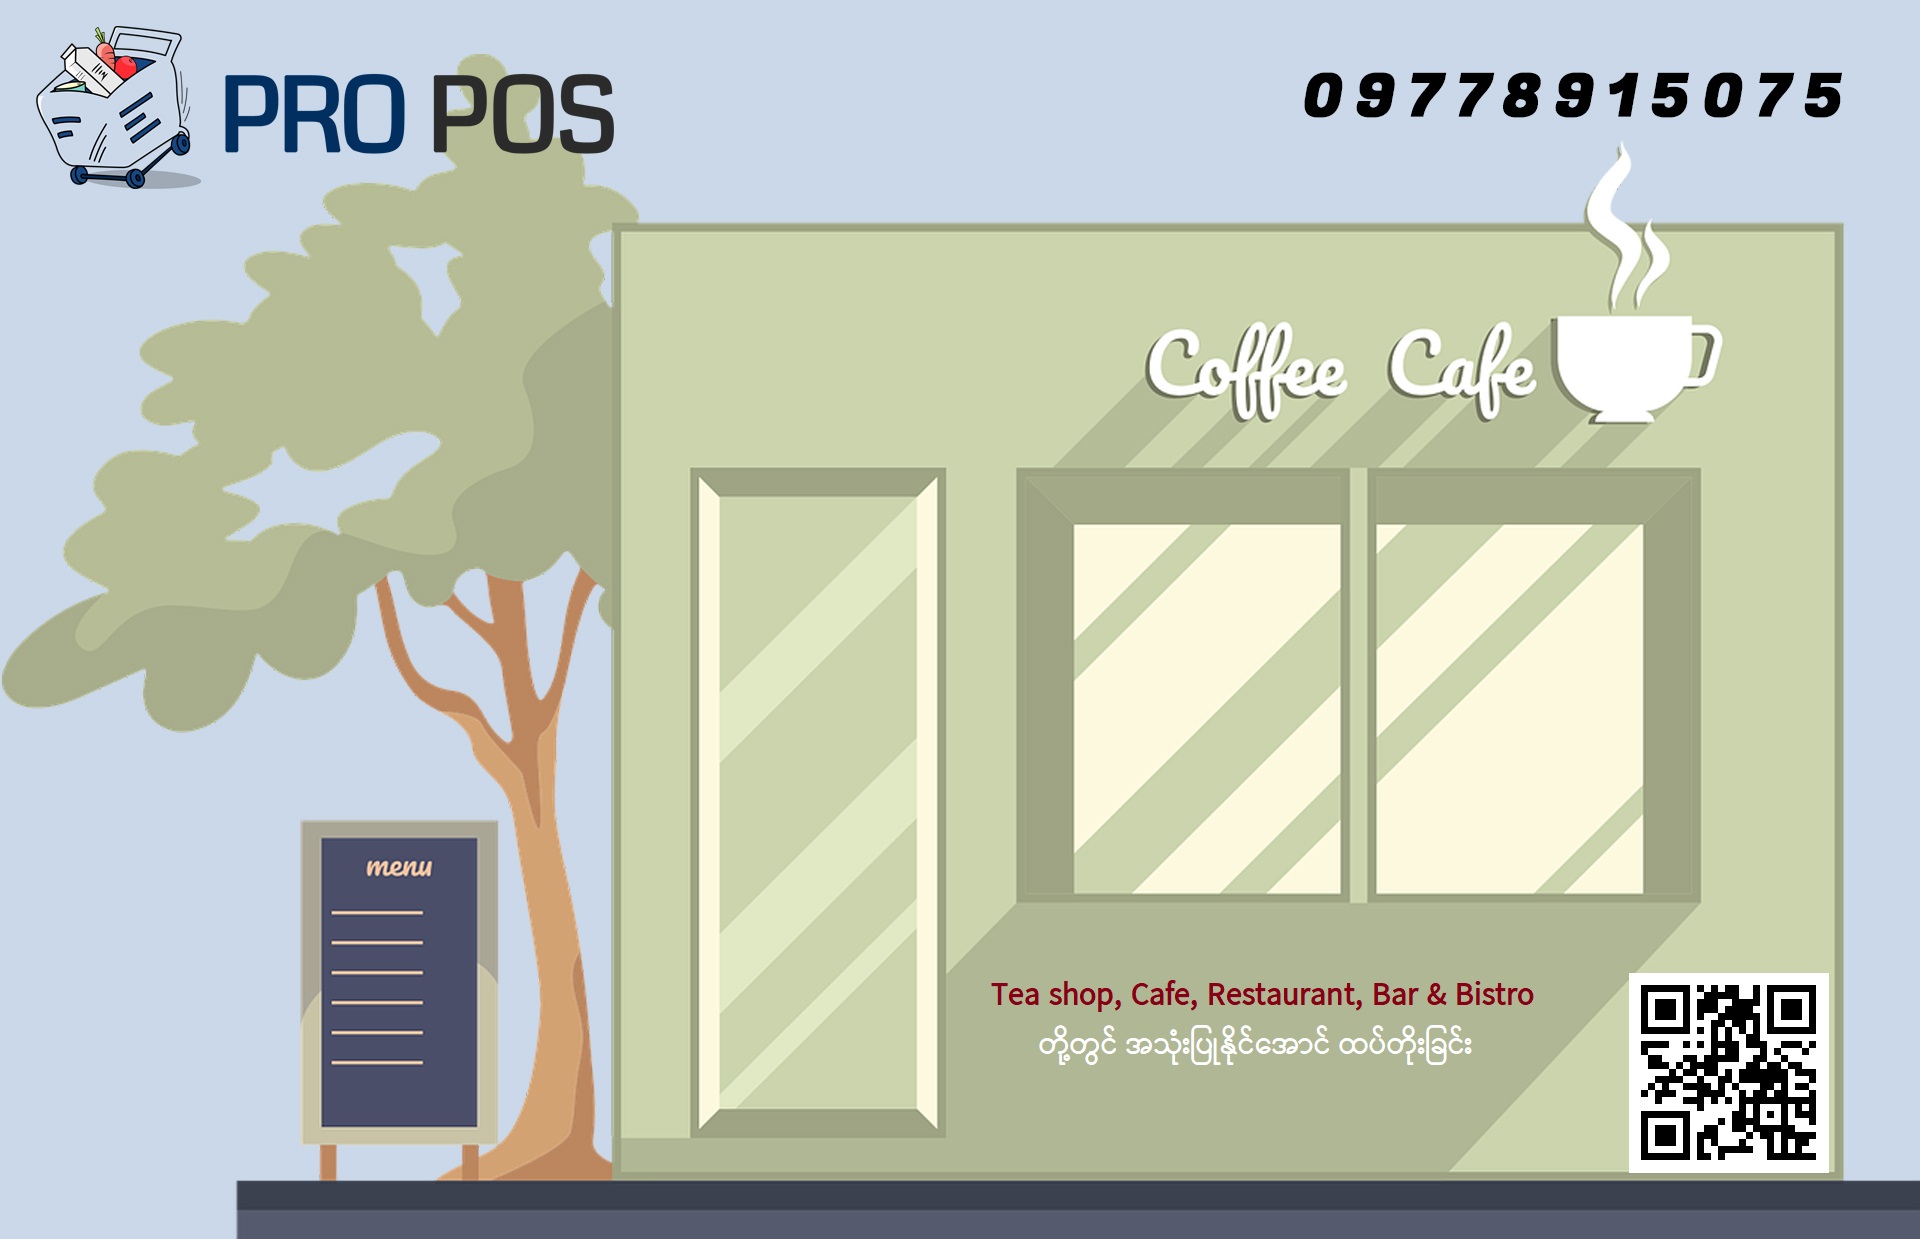 PRO POS တွင် Tea shop, Café, Restaurant, Bar & Bistro တို့အတွက် အသုံးဝင်သော Features ထပ်တိုးခြင်း